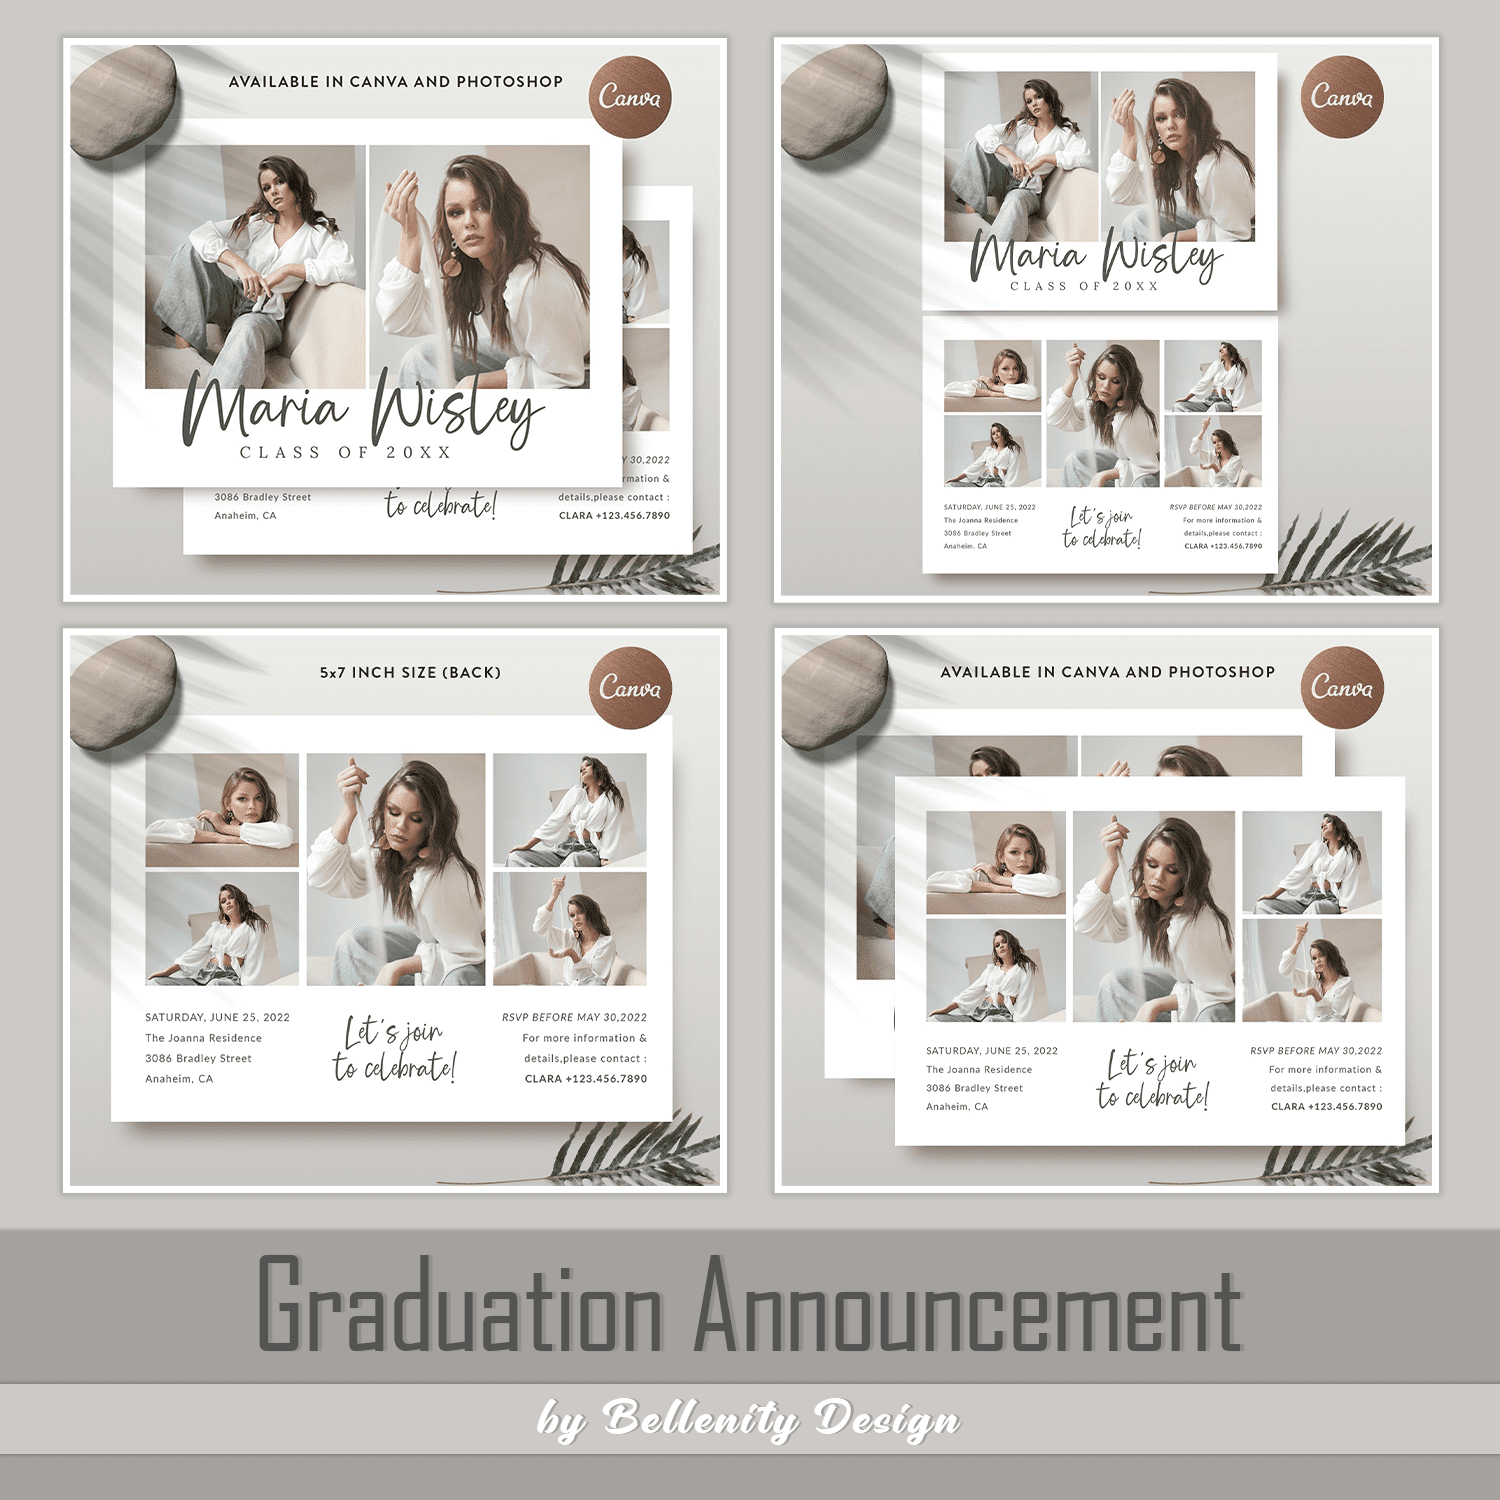 Graduation Announcement SG014 cover.